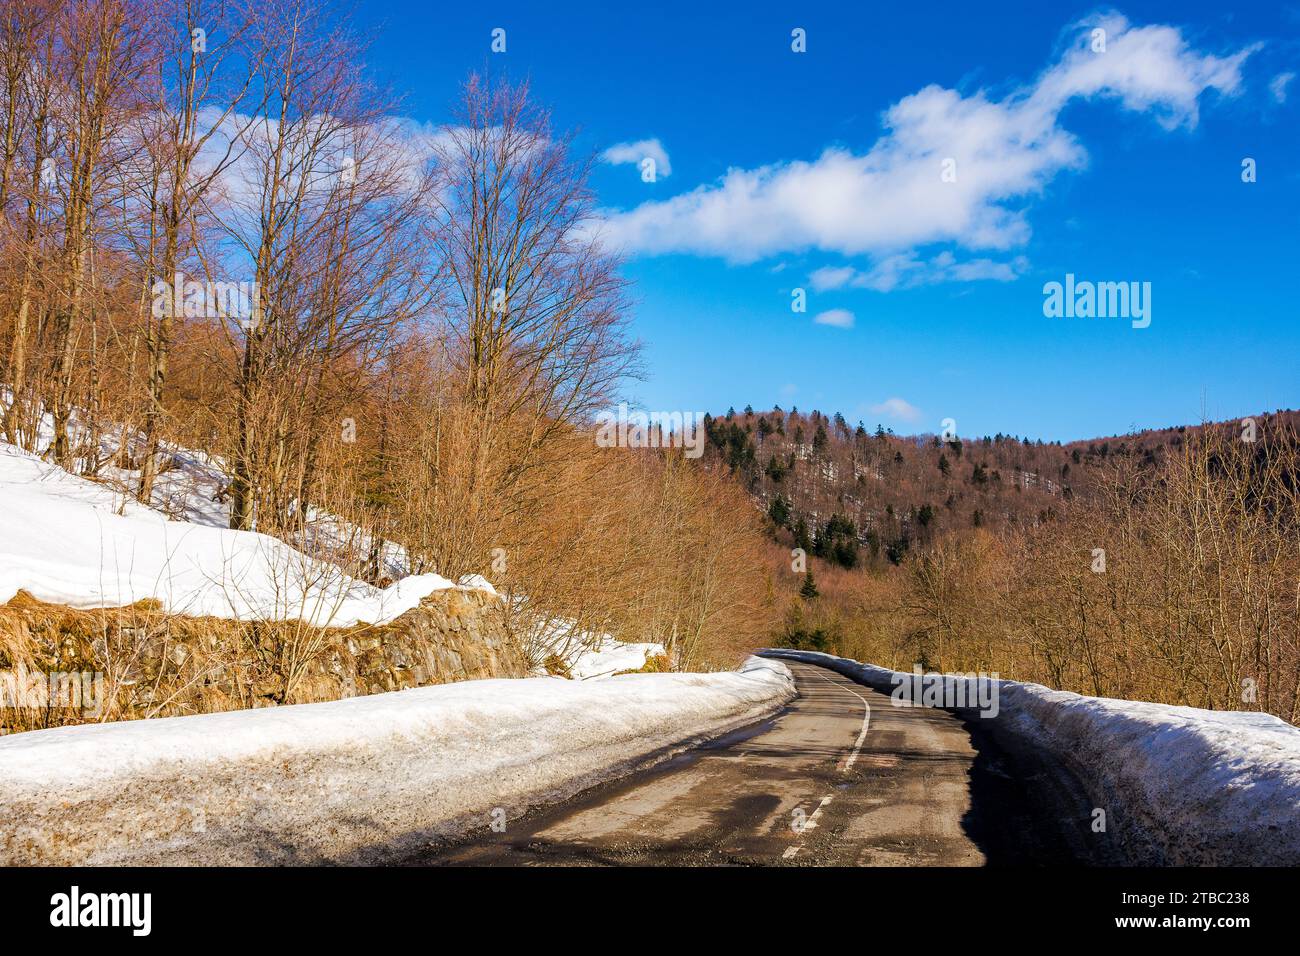 Die alte Straße führt durch schneebedeckte, bewaldete Hügel. Bergige Winterlandschaft an einem sonnigen Tag unter blauem Himmel mit Wolken Stockfoto